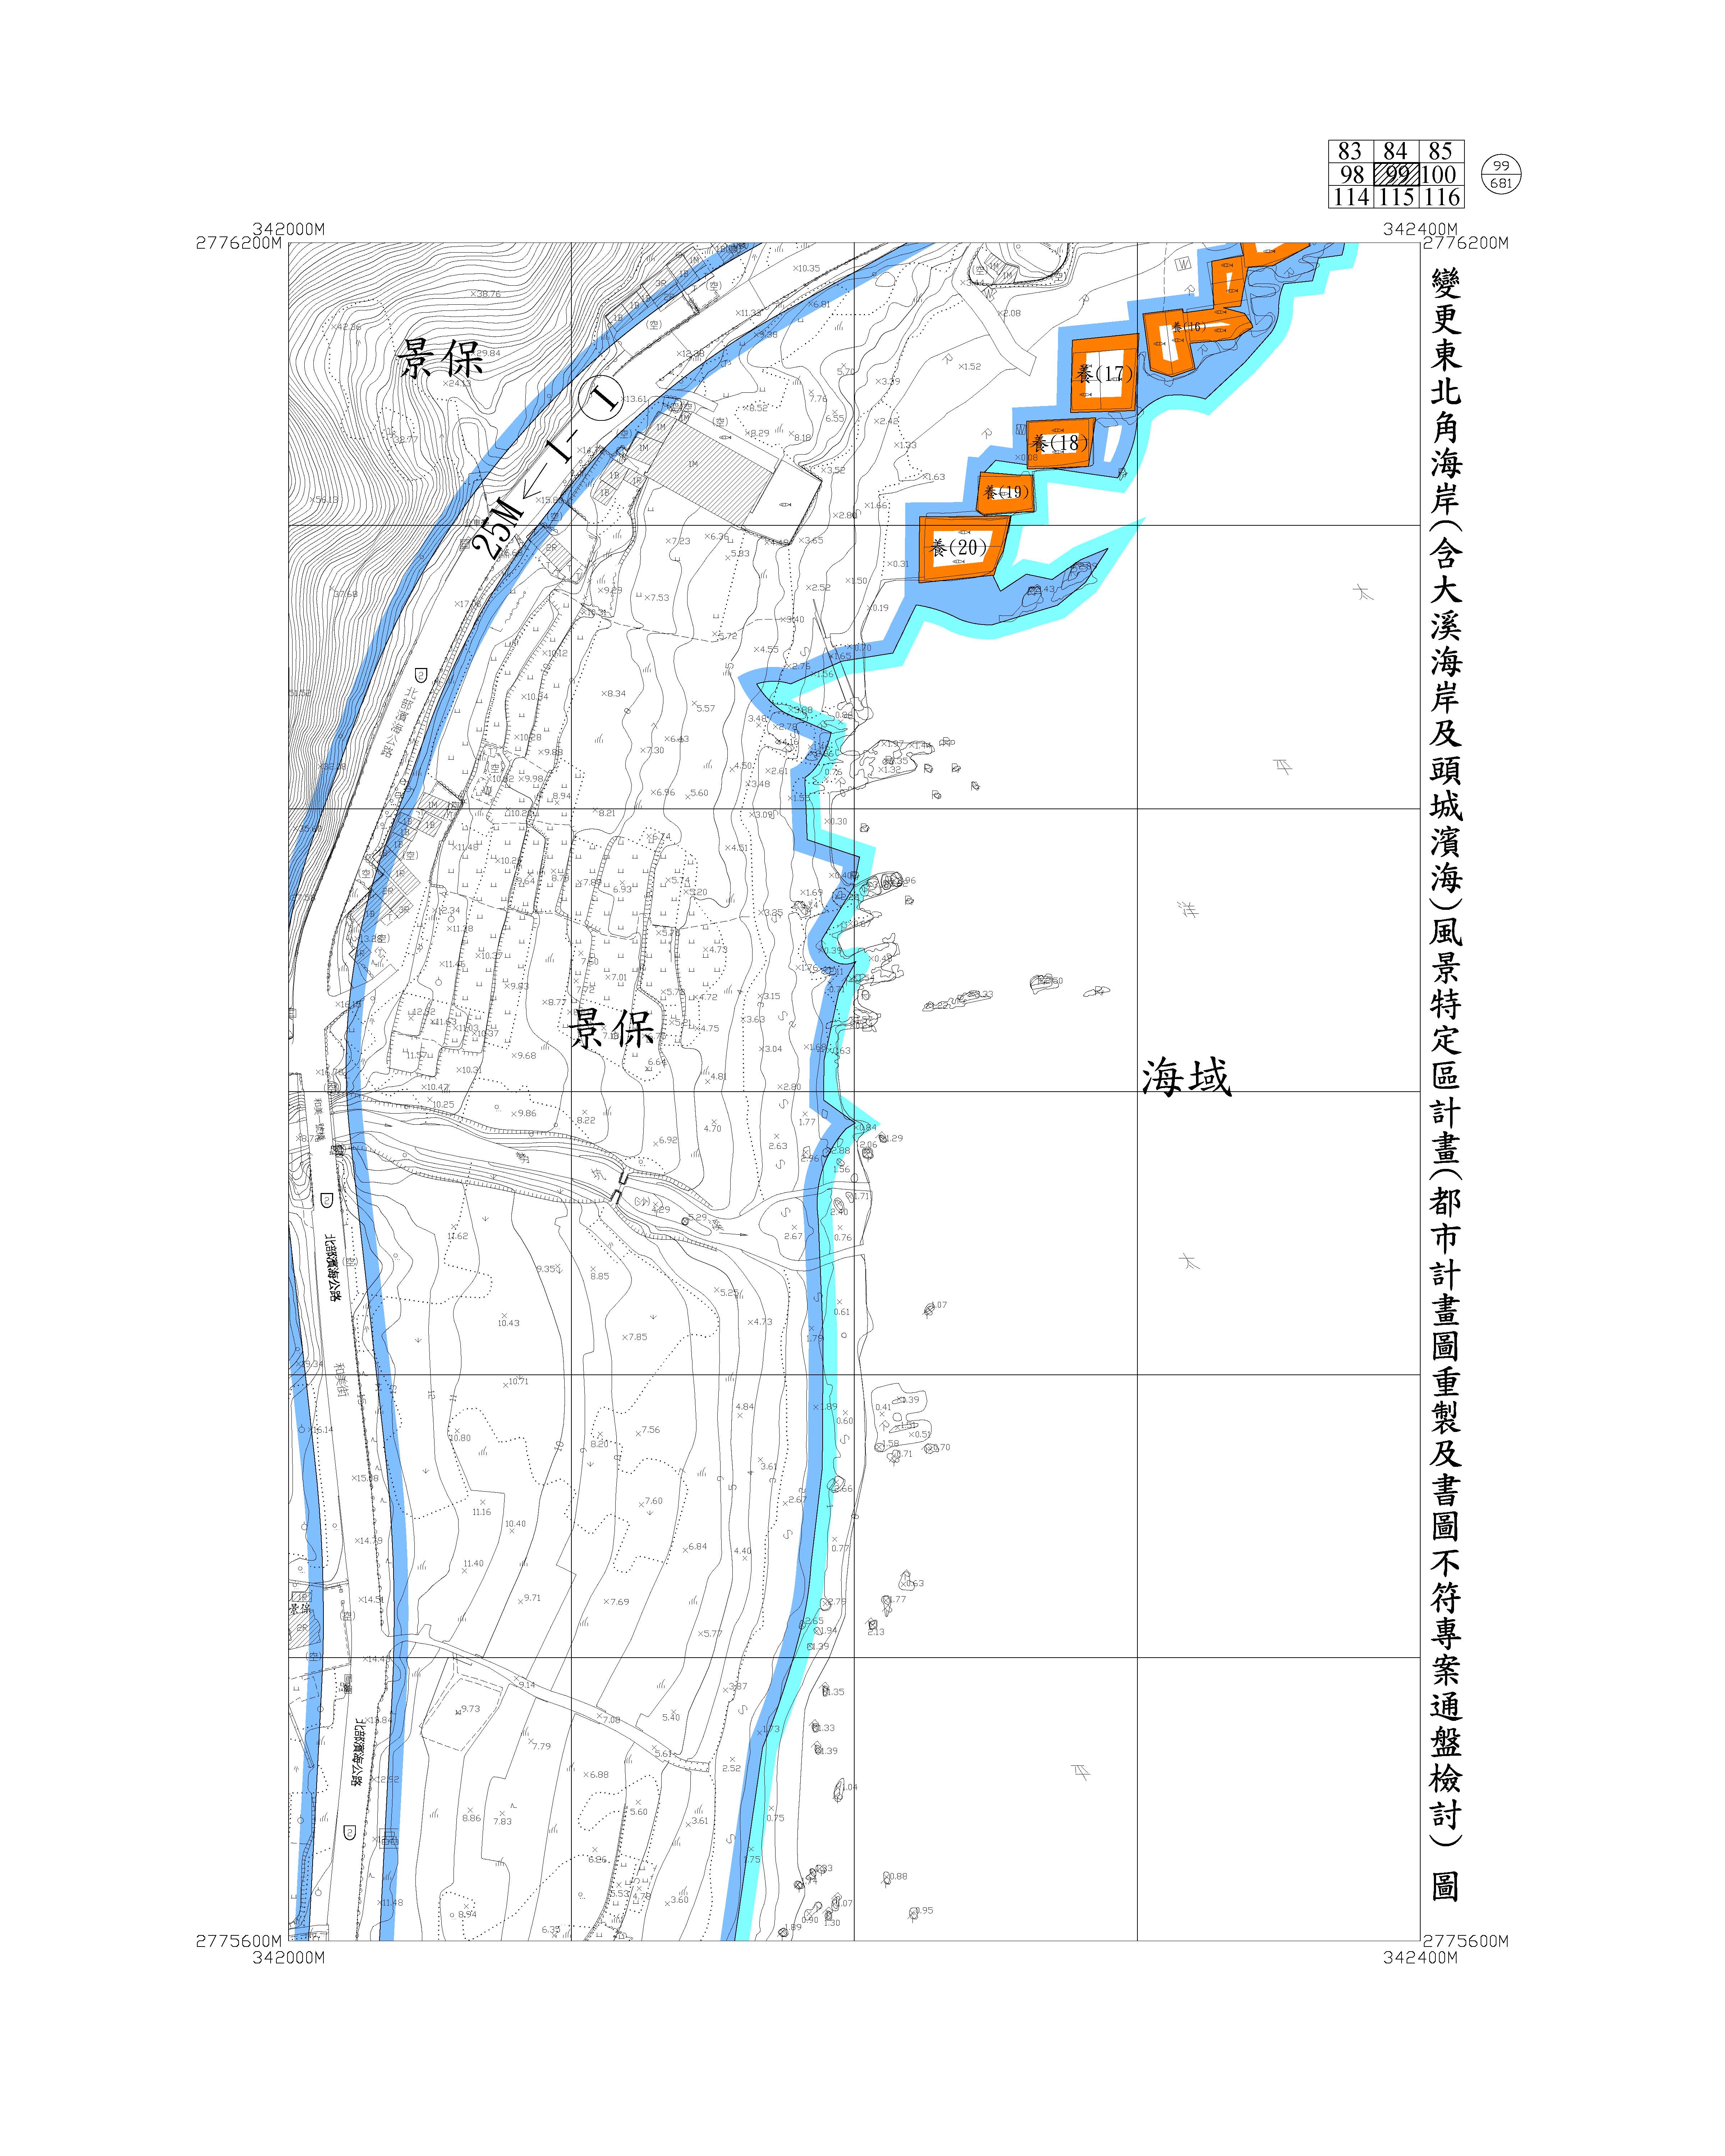 含大溪海岸及頭城濱海都市計畫圖重製及書圖不符專案通盤檢討圖資108